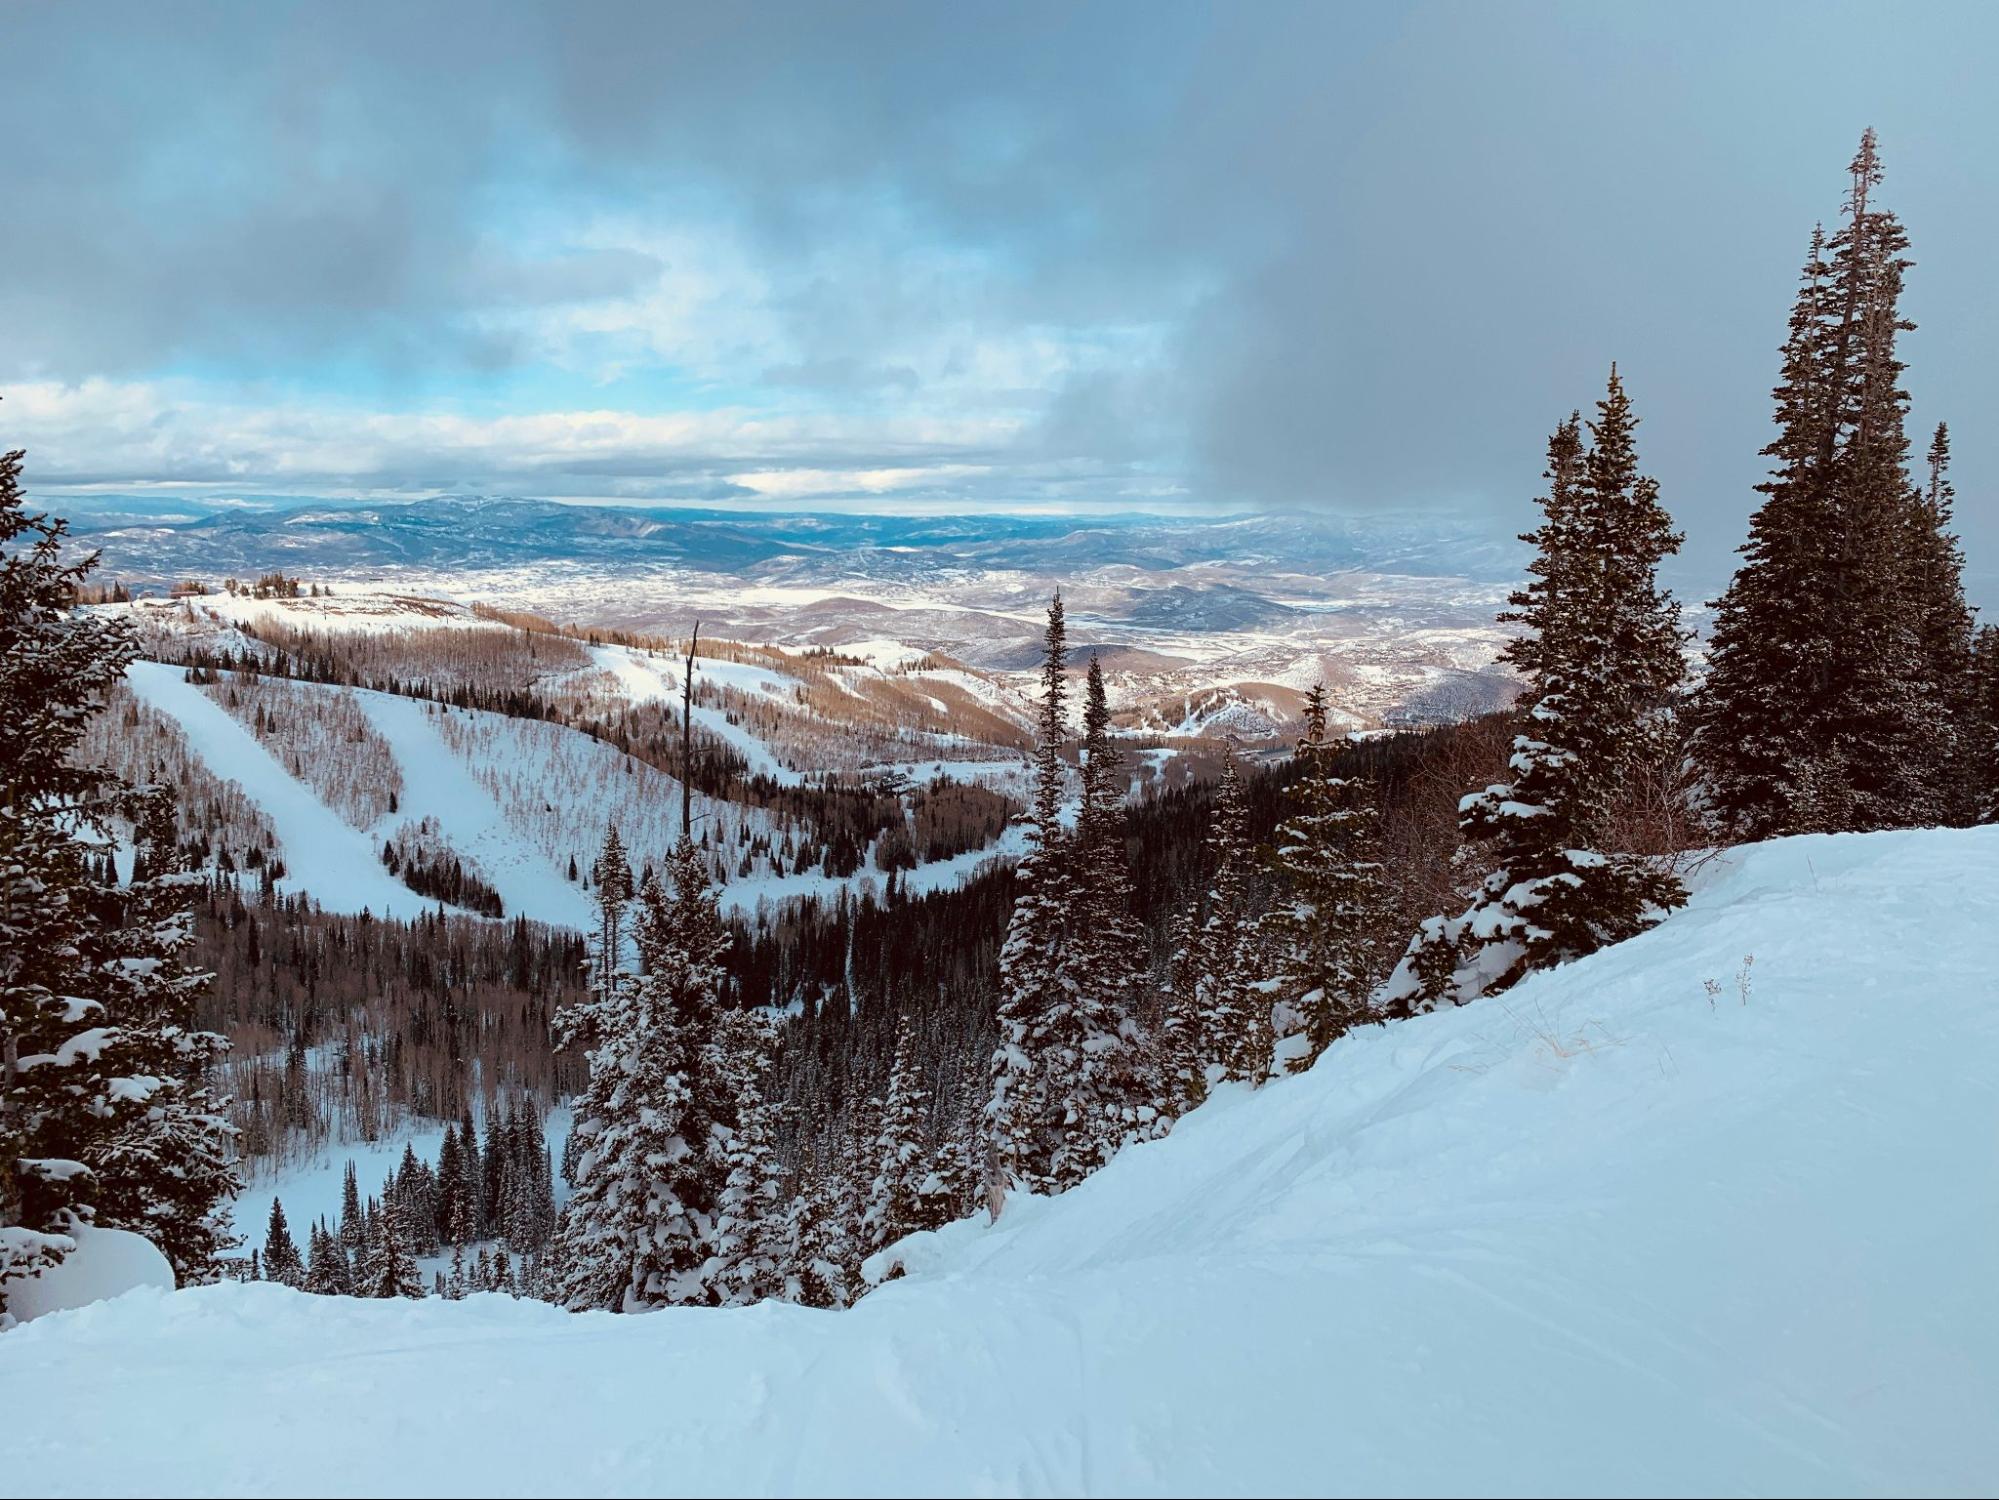 Several ski slopes in Utah’s mountains.